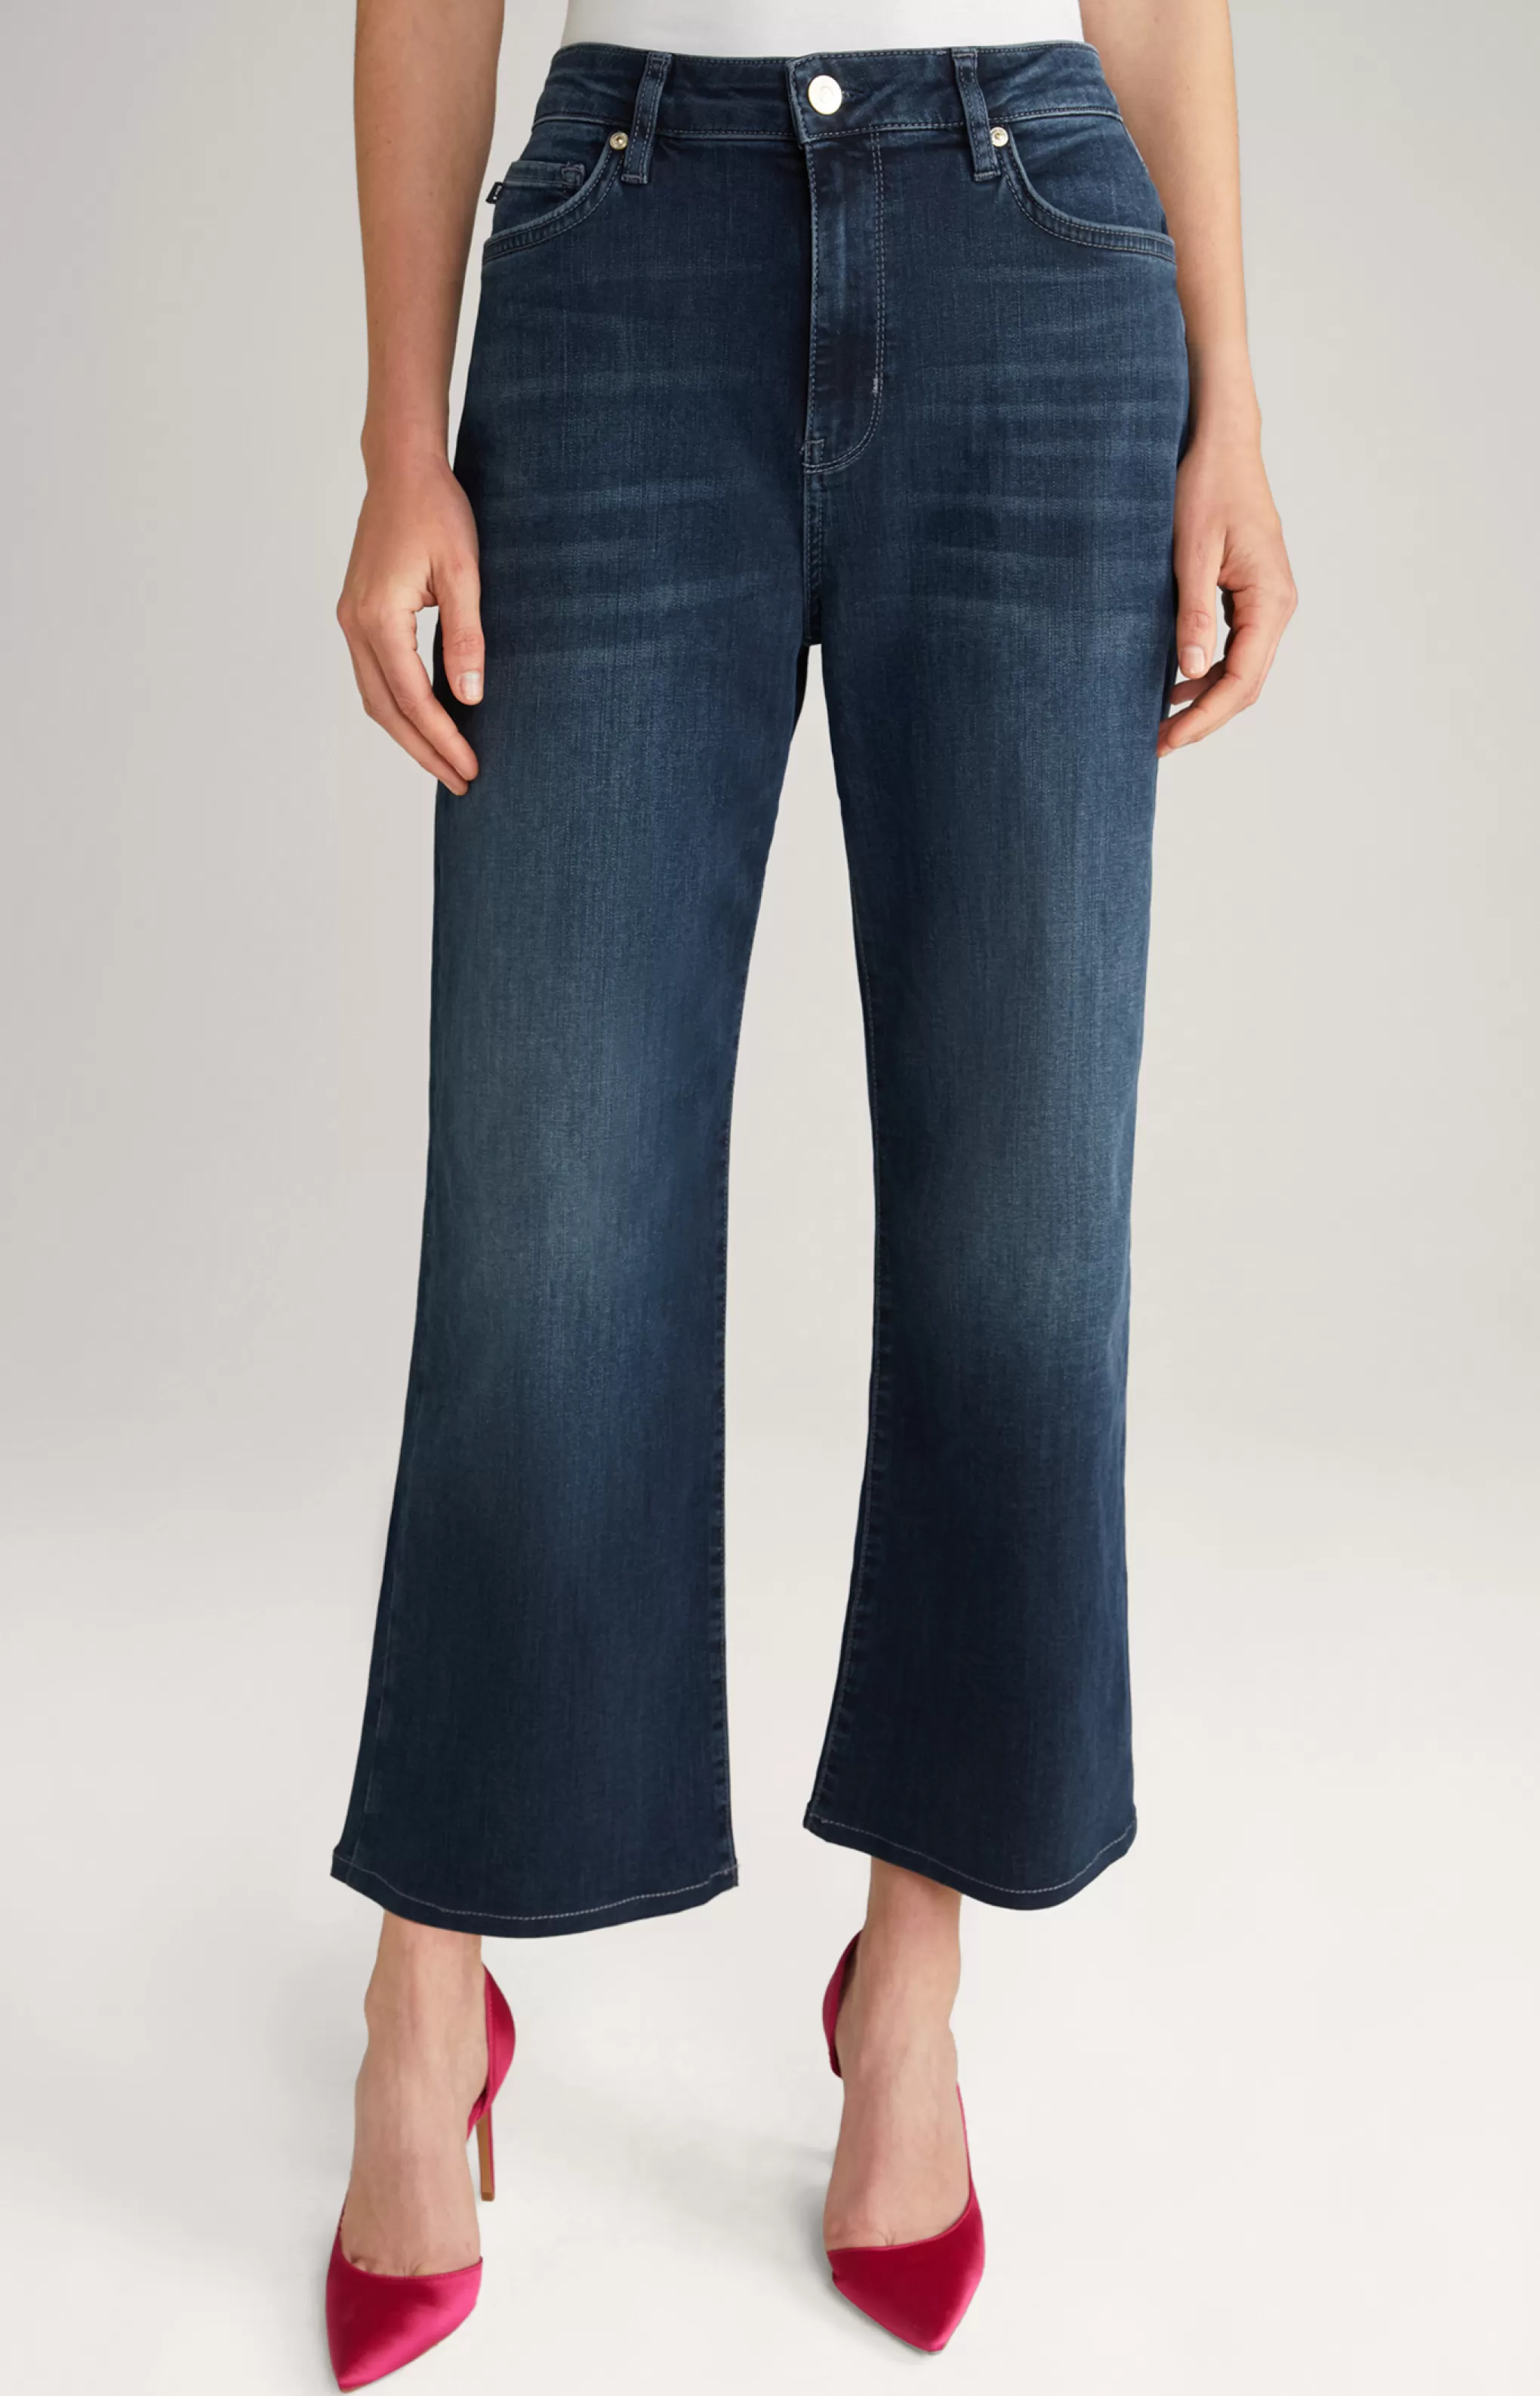 Jeans | Clothing*JOOP Jeans | Clothing Jeans in a